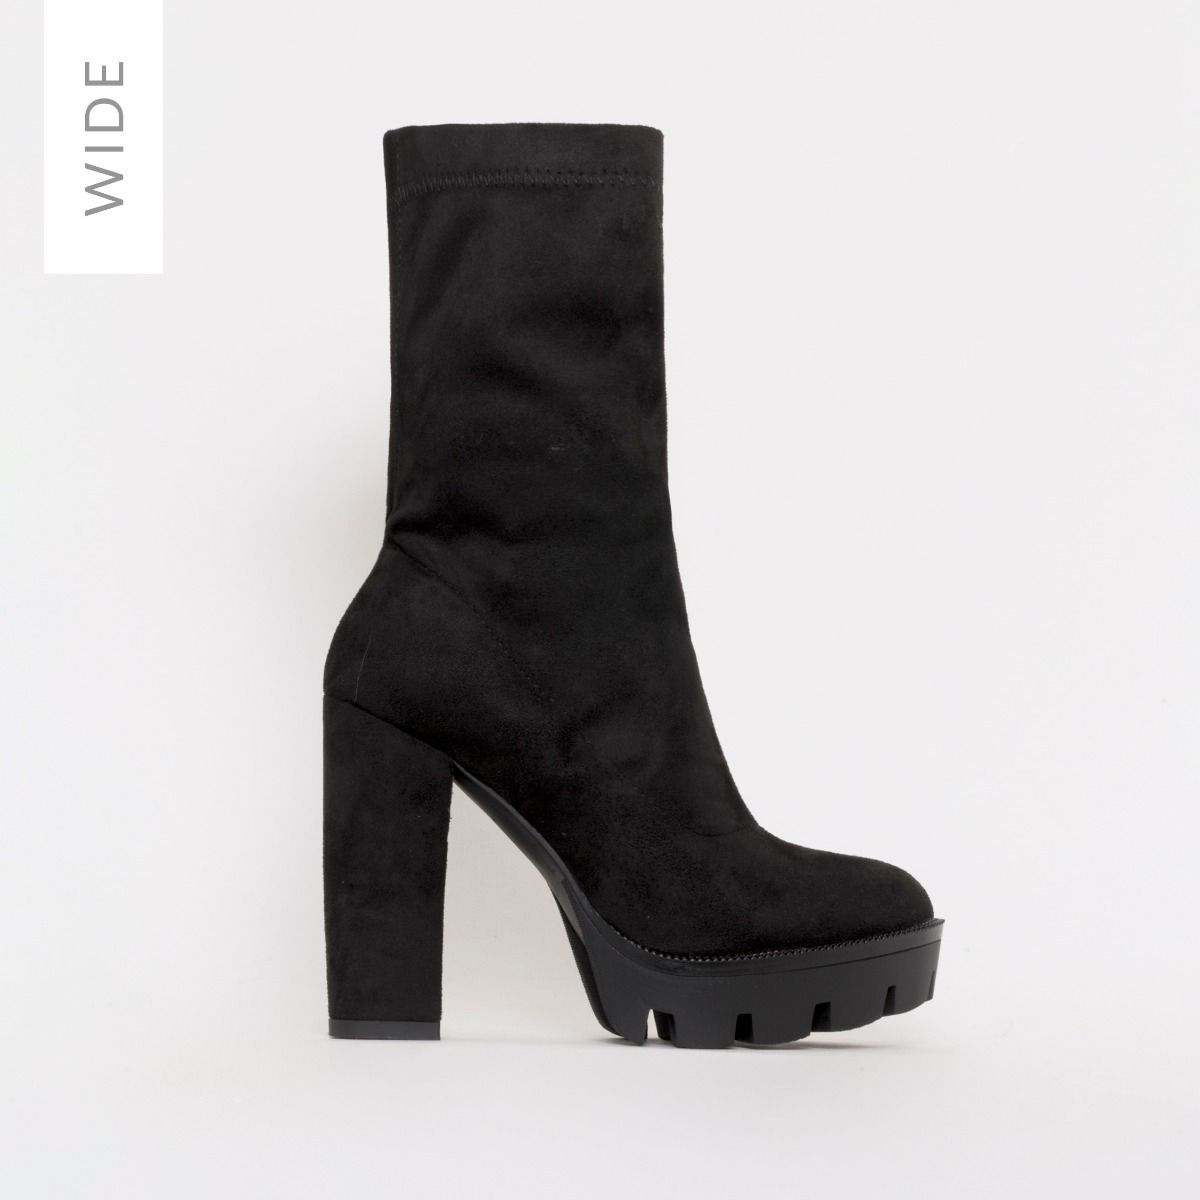 black suede platform ankle boots